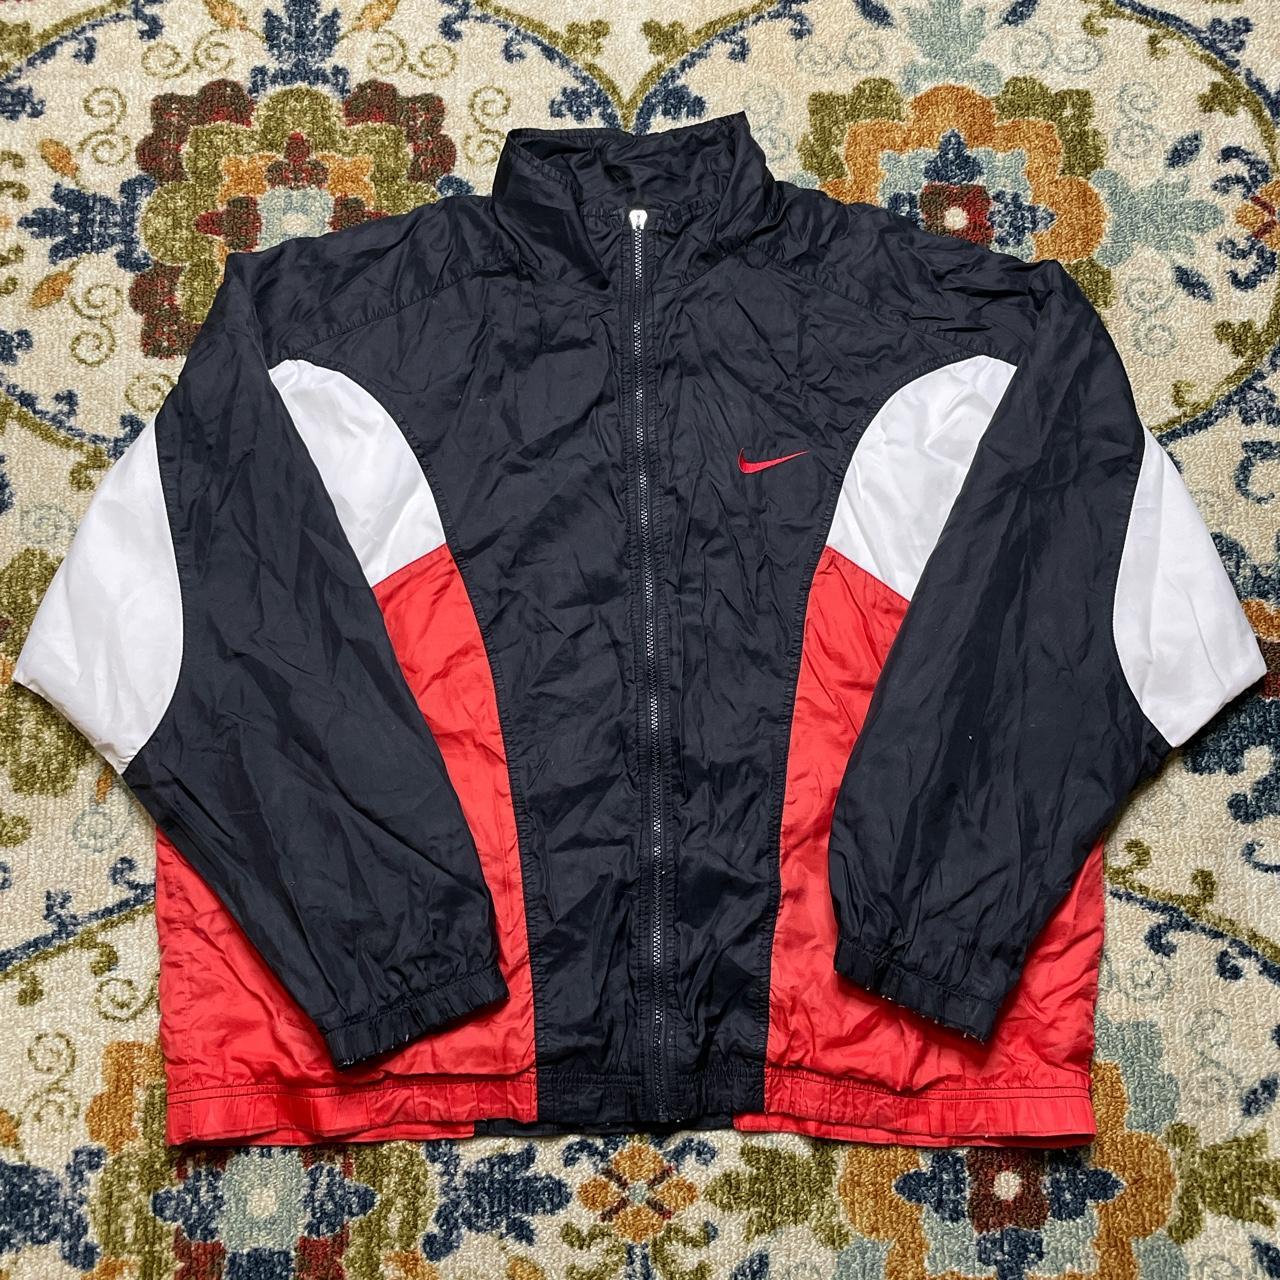 Vintage Nike zip up colorblock windbreaker jacket XL... - Depop